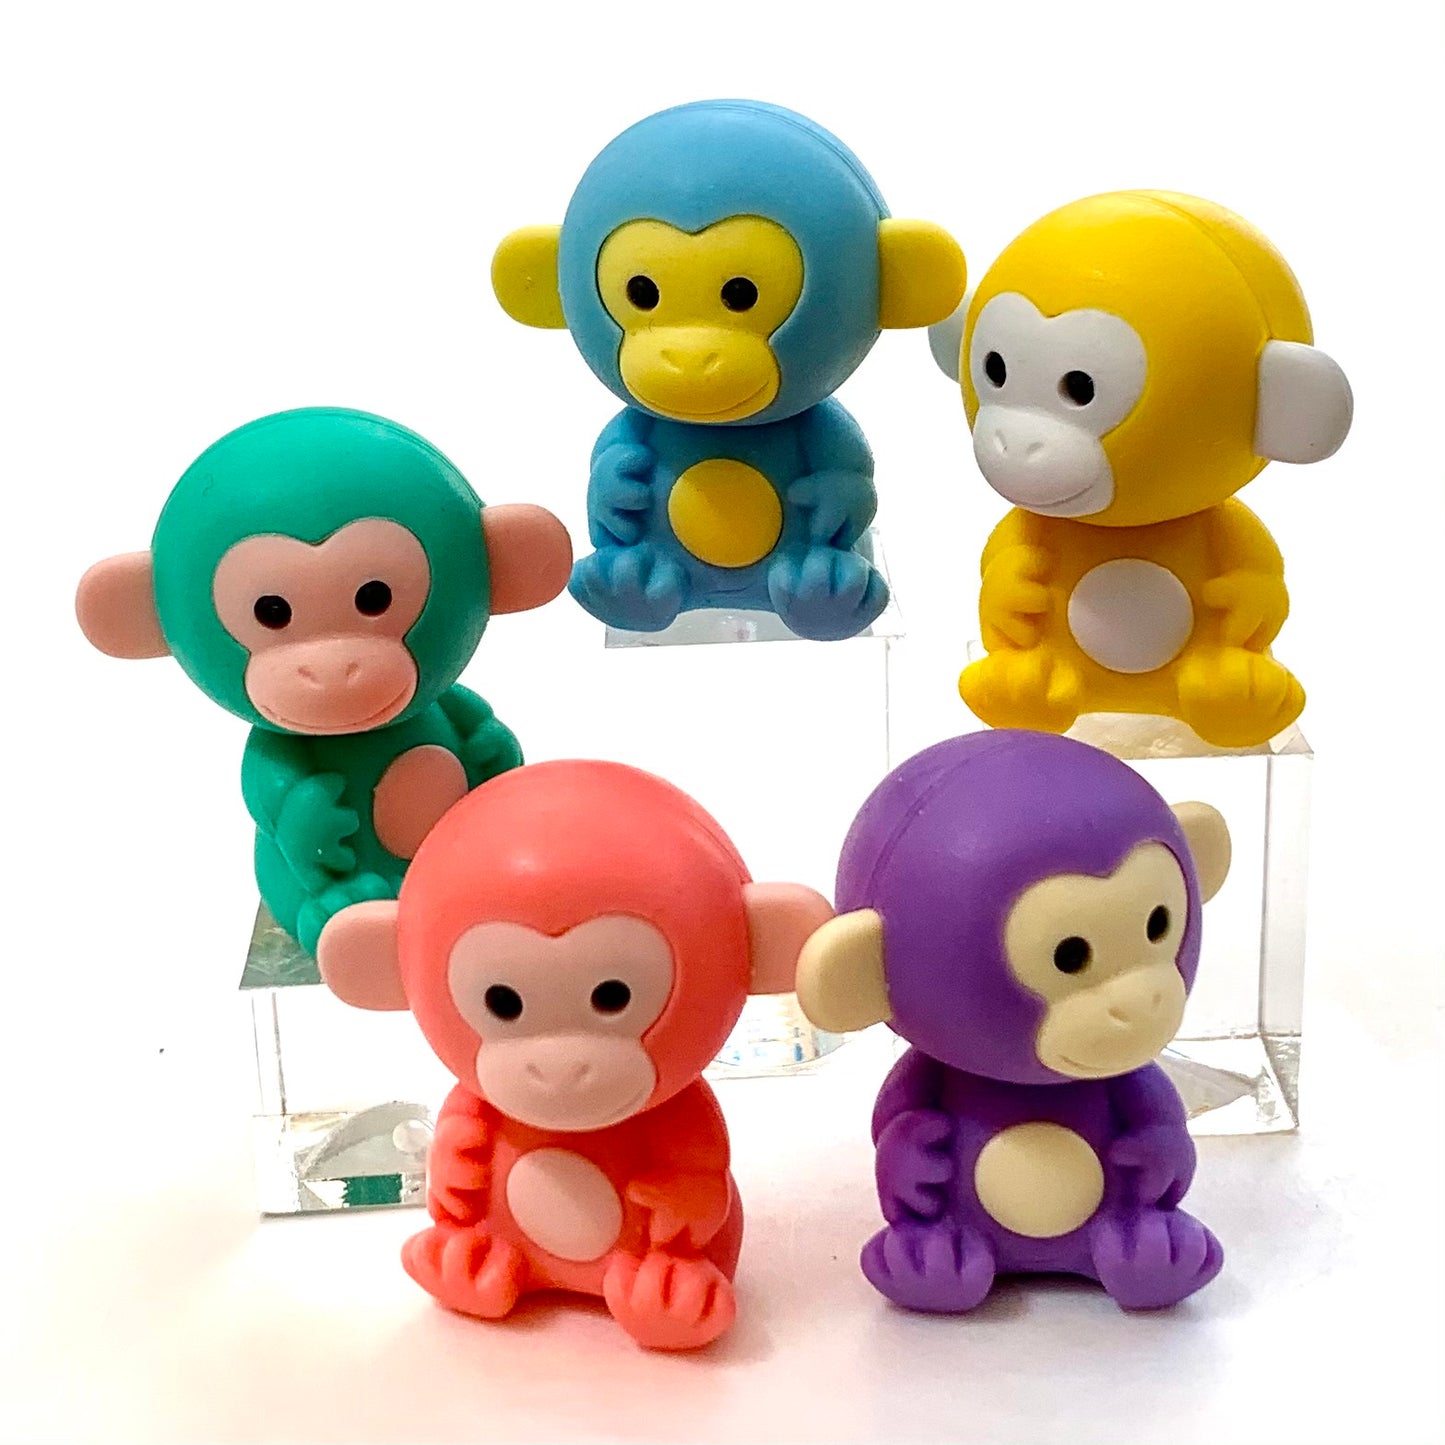 38455 Iwako Colorz Monkey -12 sets of 5 Erasers